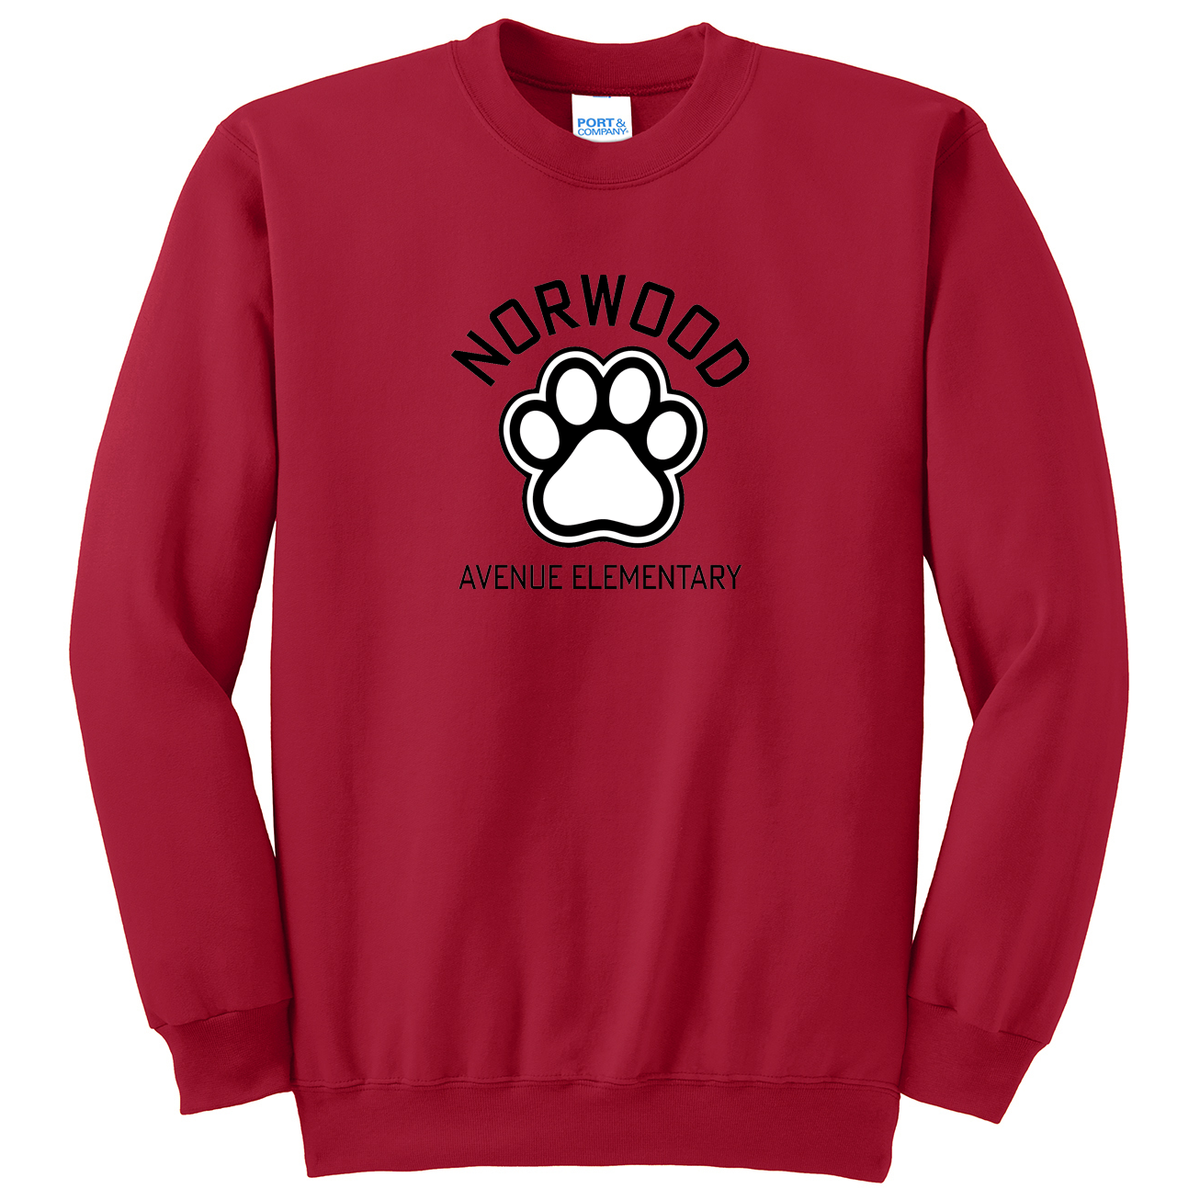 Norwood Ave. Elementary School Crew Neck Sweater